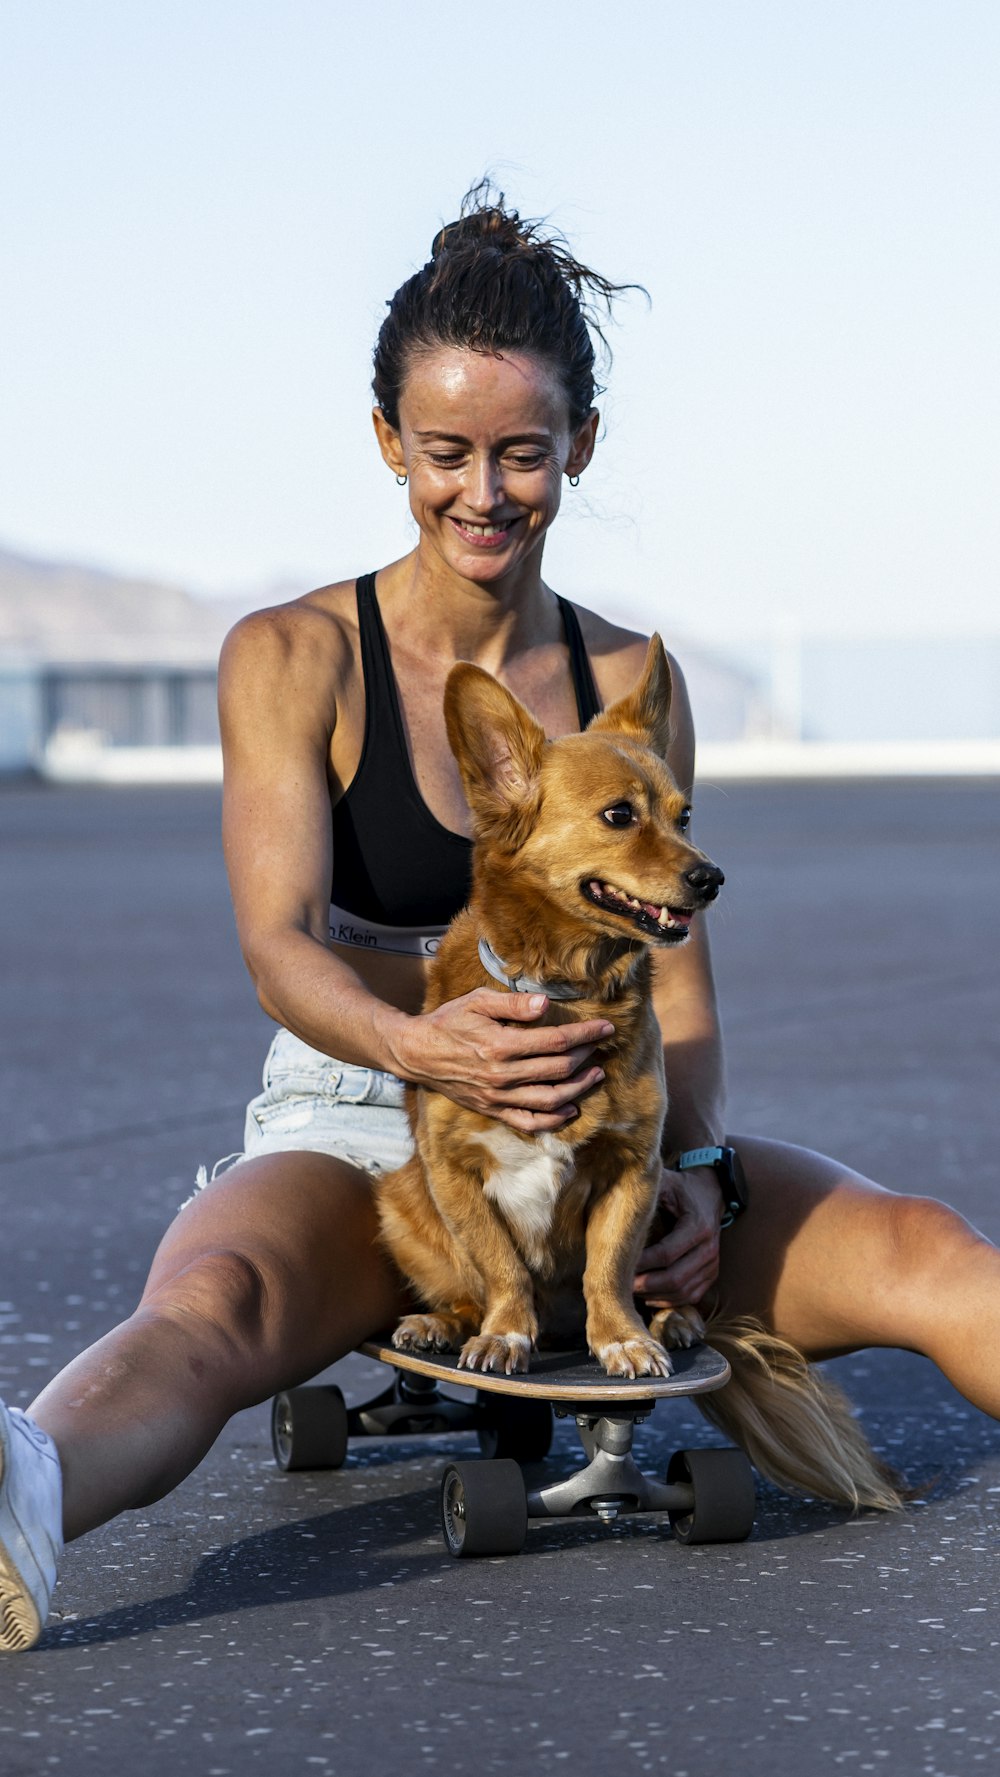 Una mujer sentada en una patineta sosteniendo a un perro